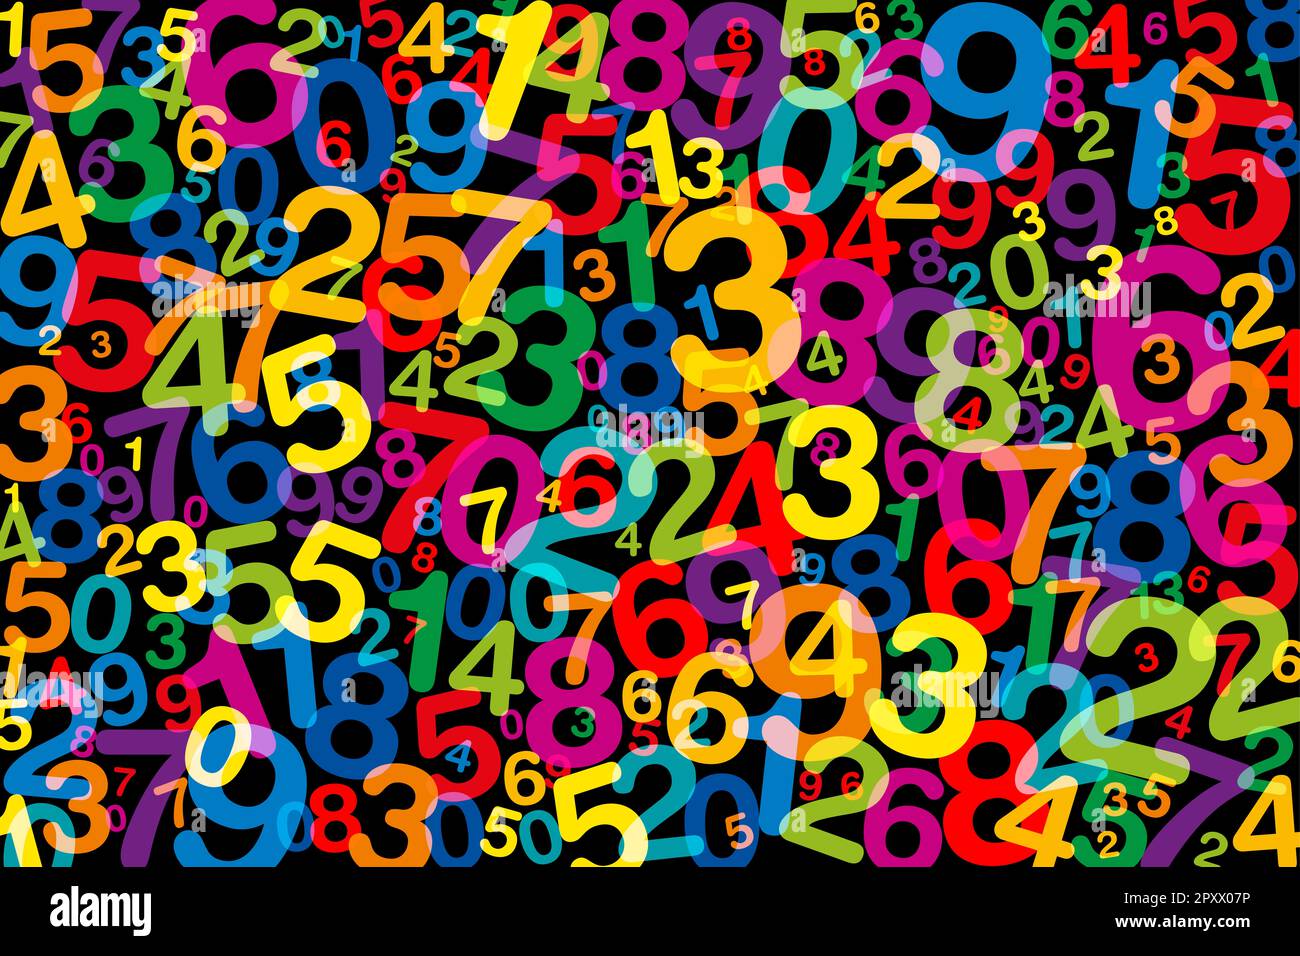 Durcheinander bunte Zahlen, über Schwarz. Verdrehte, nach dem Zufallsprinzip verteilte Zahlen von eins bis null, in verschiedenen Größen und Winkeln, in Regenbogenfarben. Stockfoto